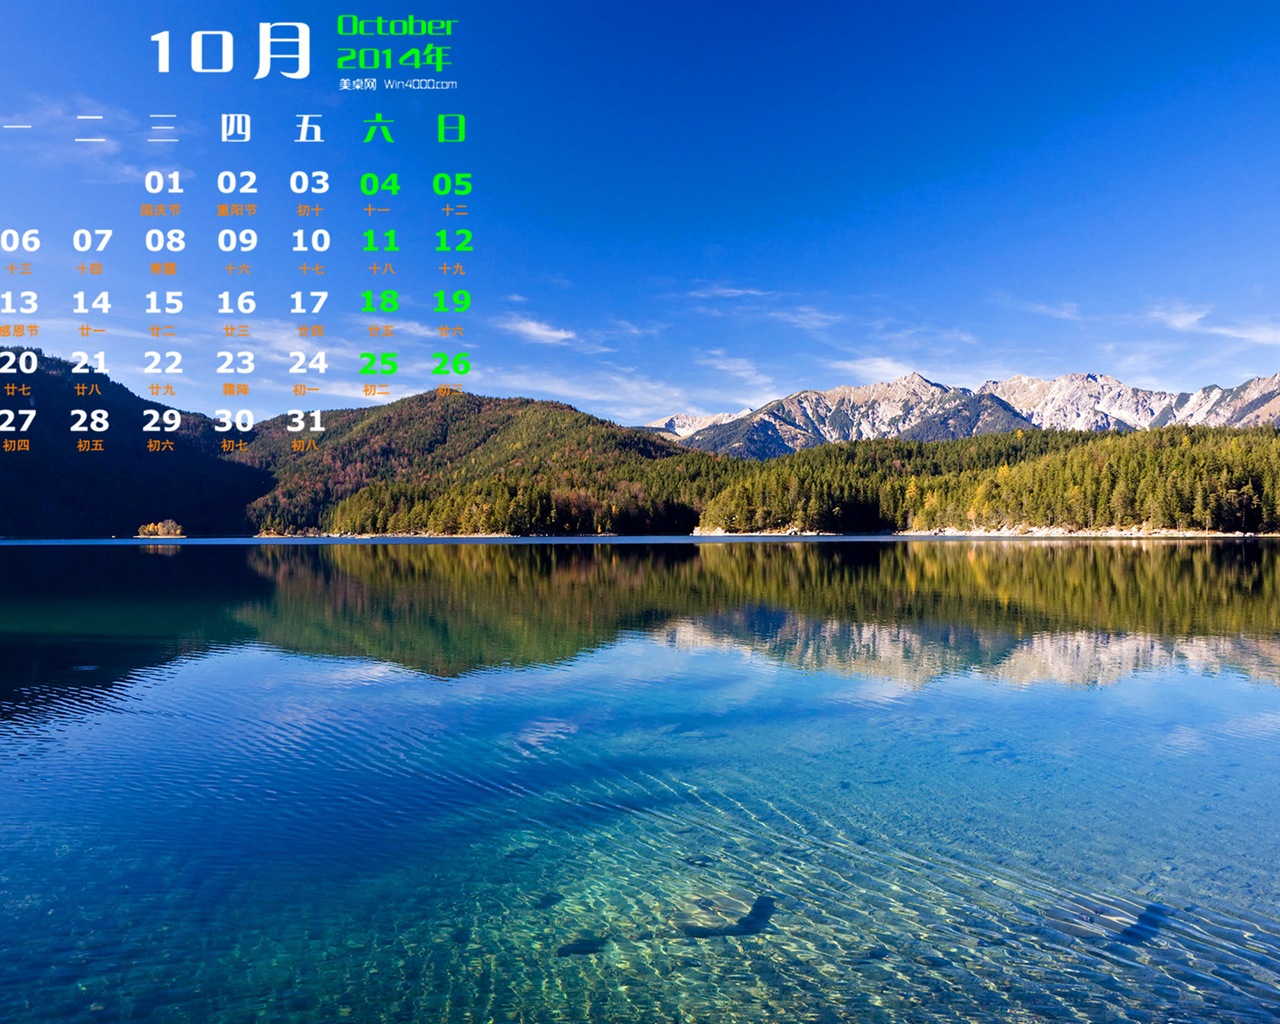 10 2014 wallpaper Calendario (1) #6 - 1280x1024